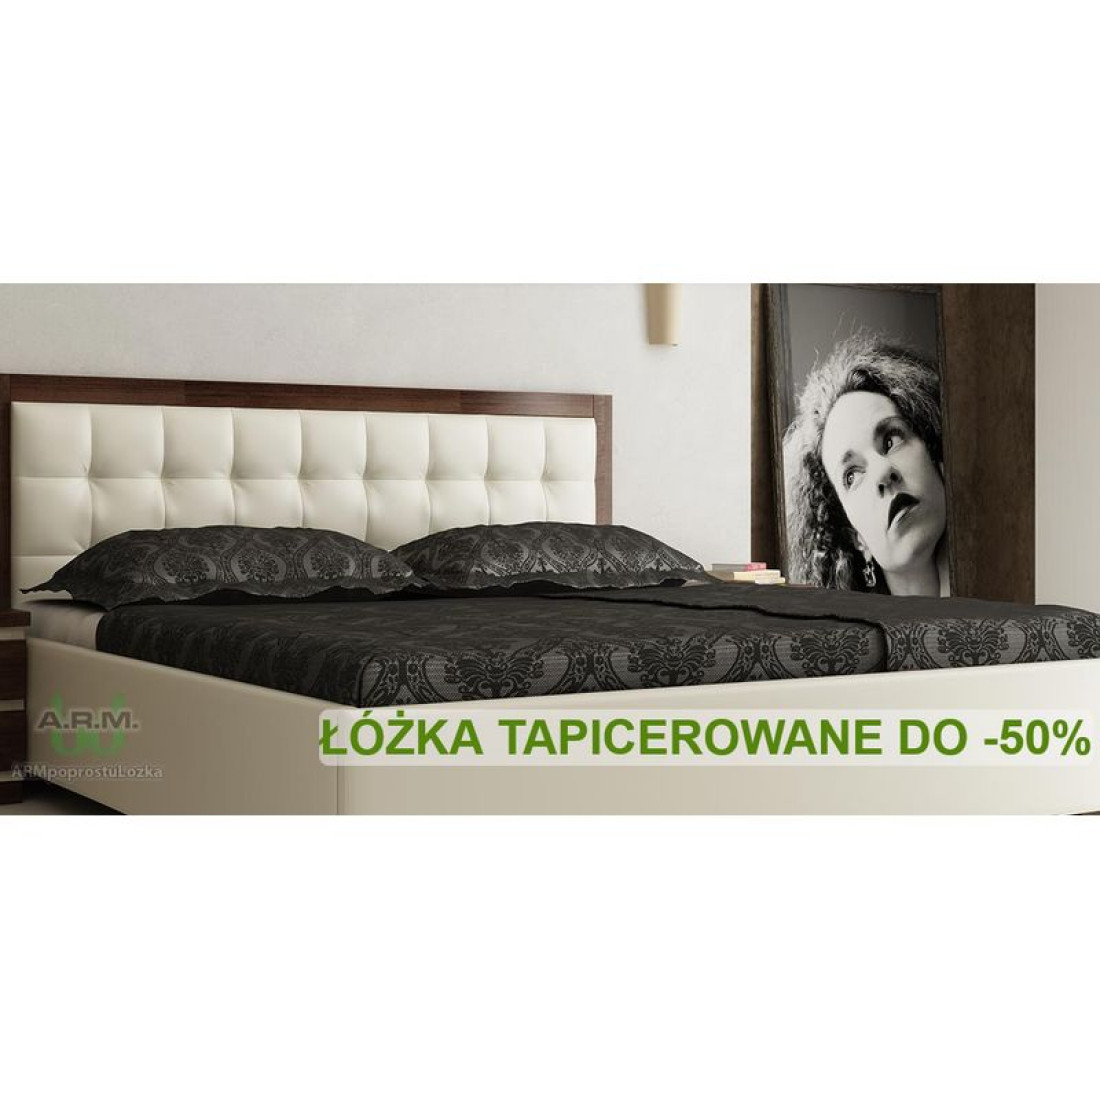 Do 50% rabatu na łóżka tapicerowane od producenta A.R.M. Mieczysław Różański